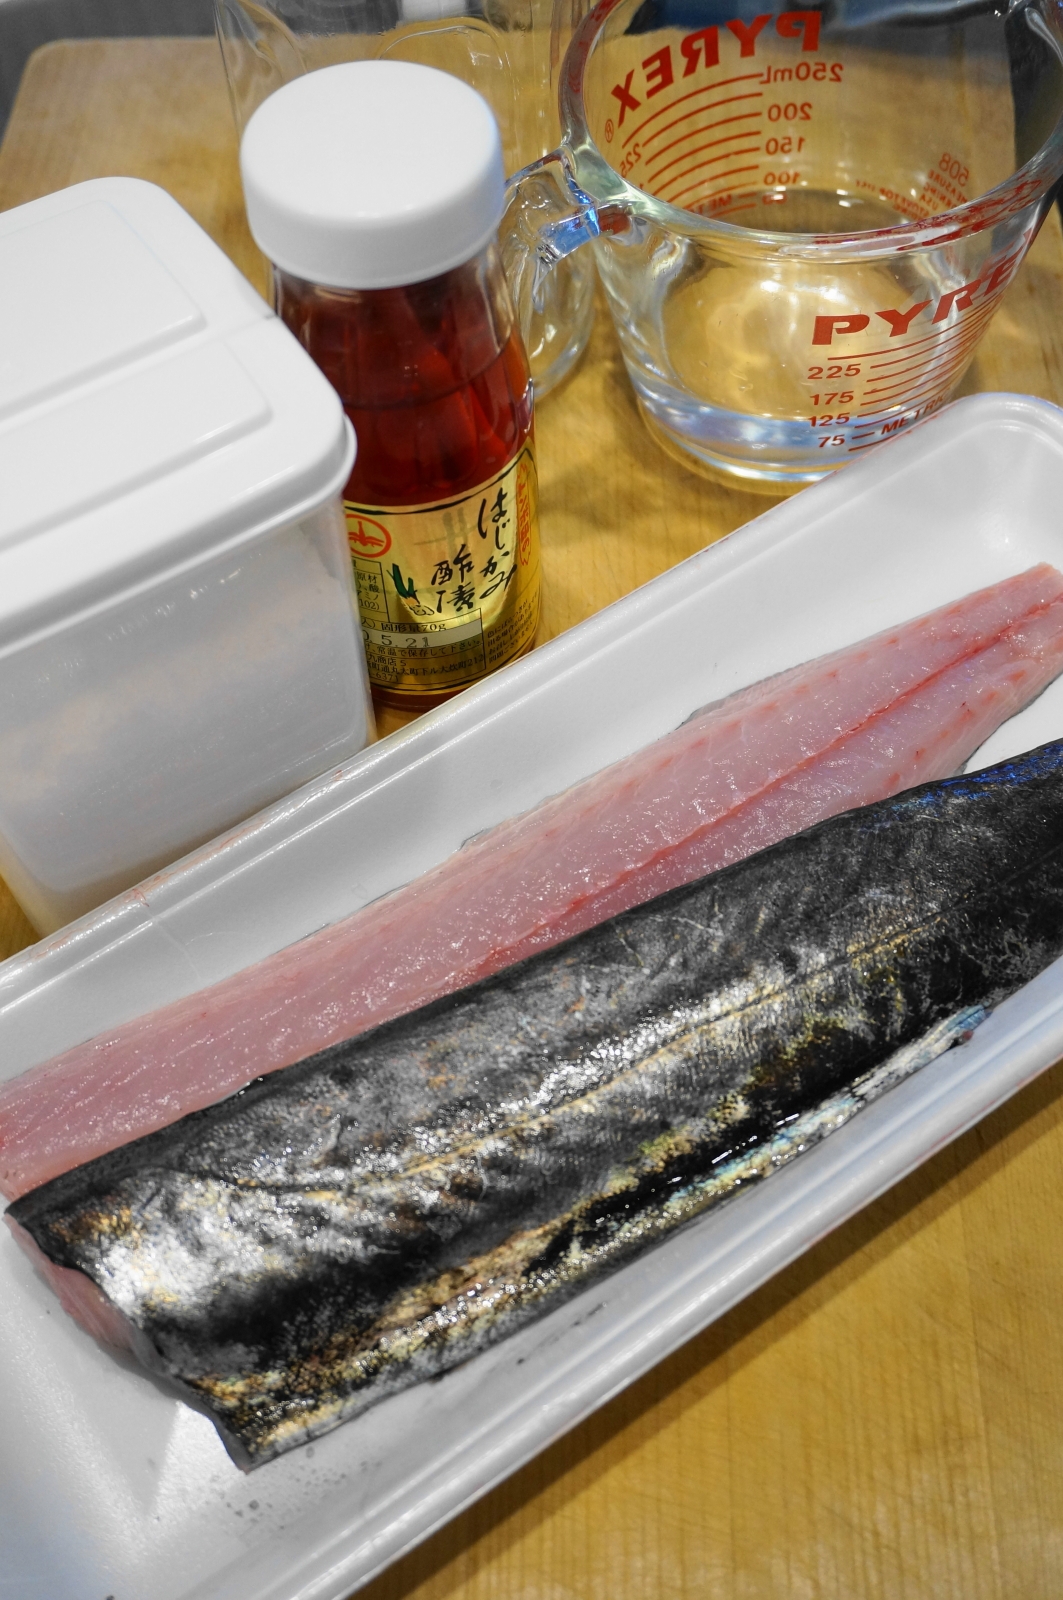 市場に出回らない珍しい魚 スミヤキの塩焼き レシピ 作り方 By Oppeke22 楽天レシピ